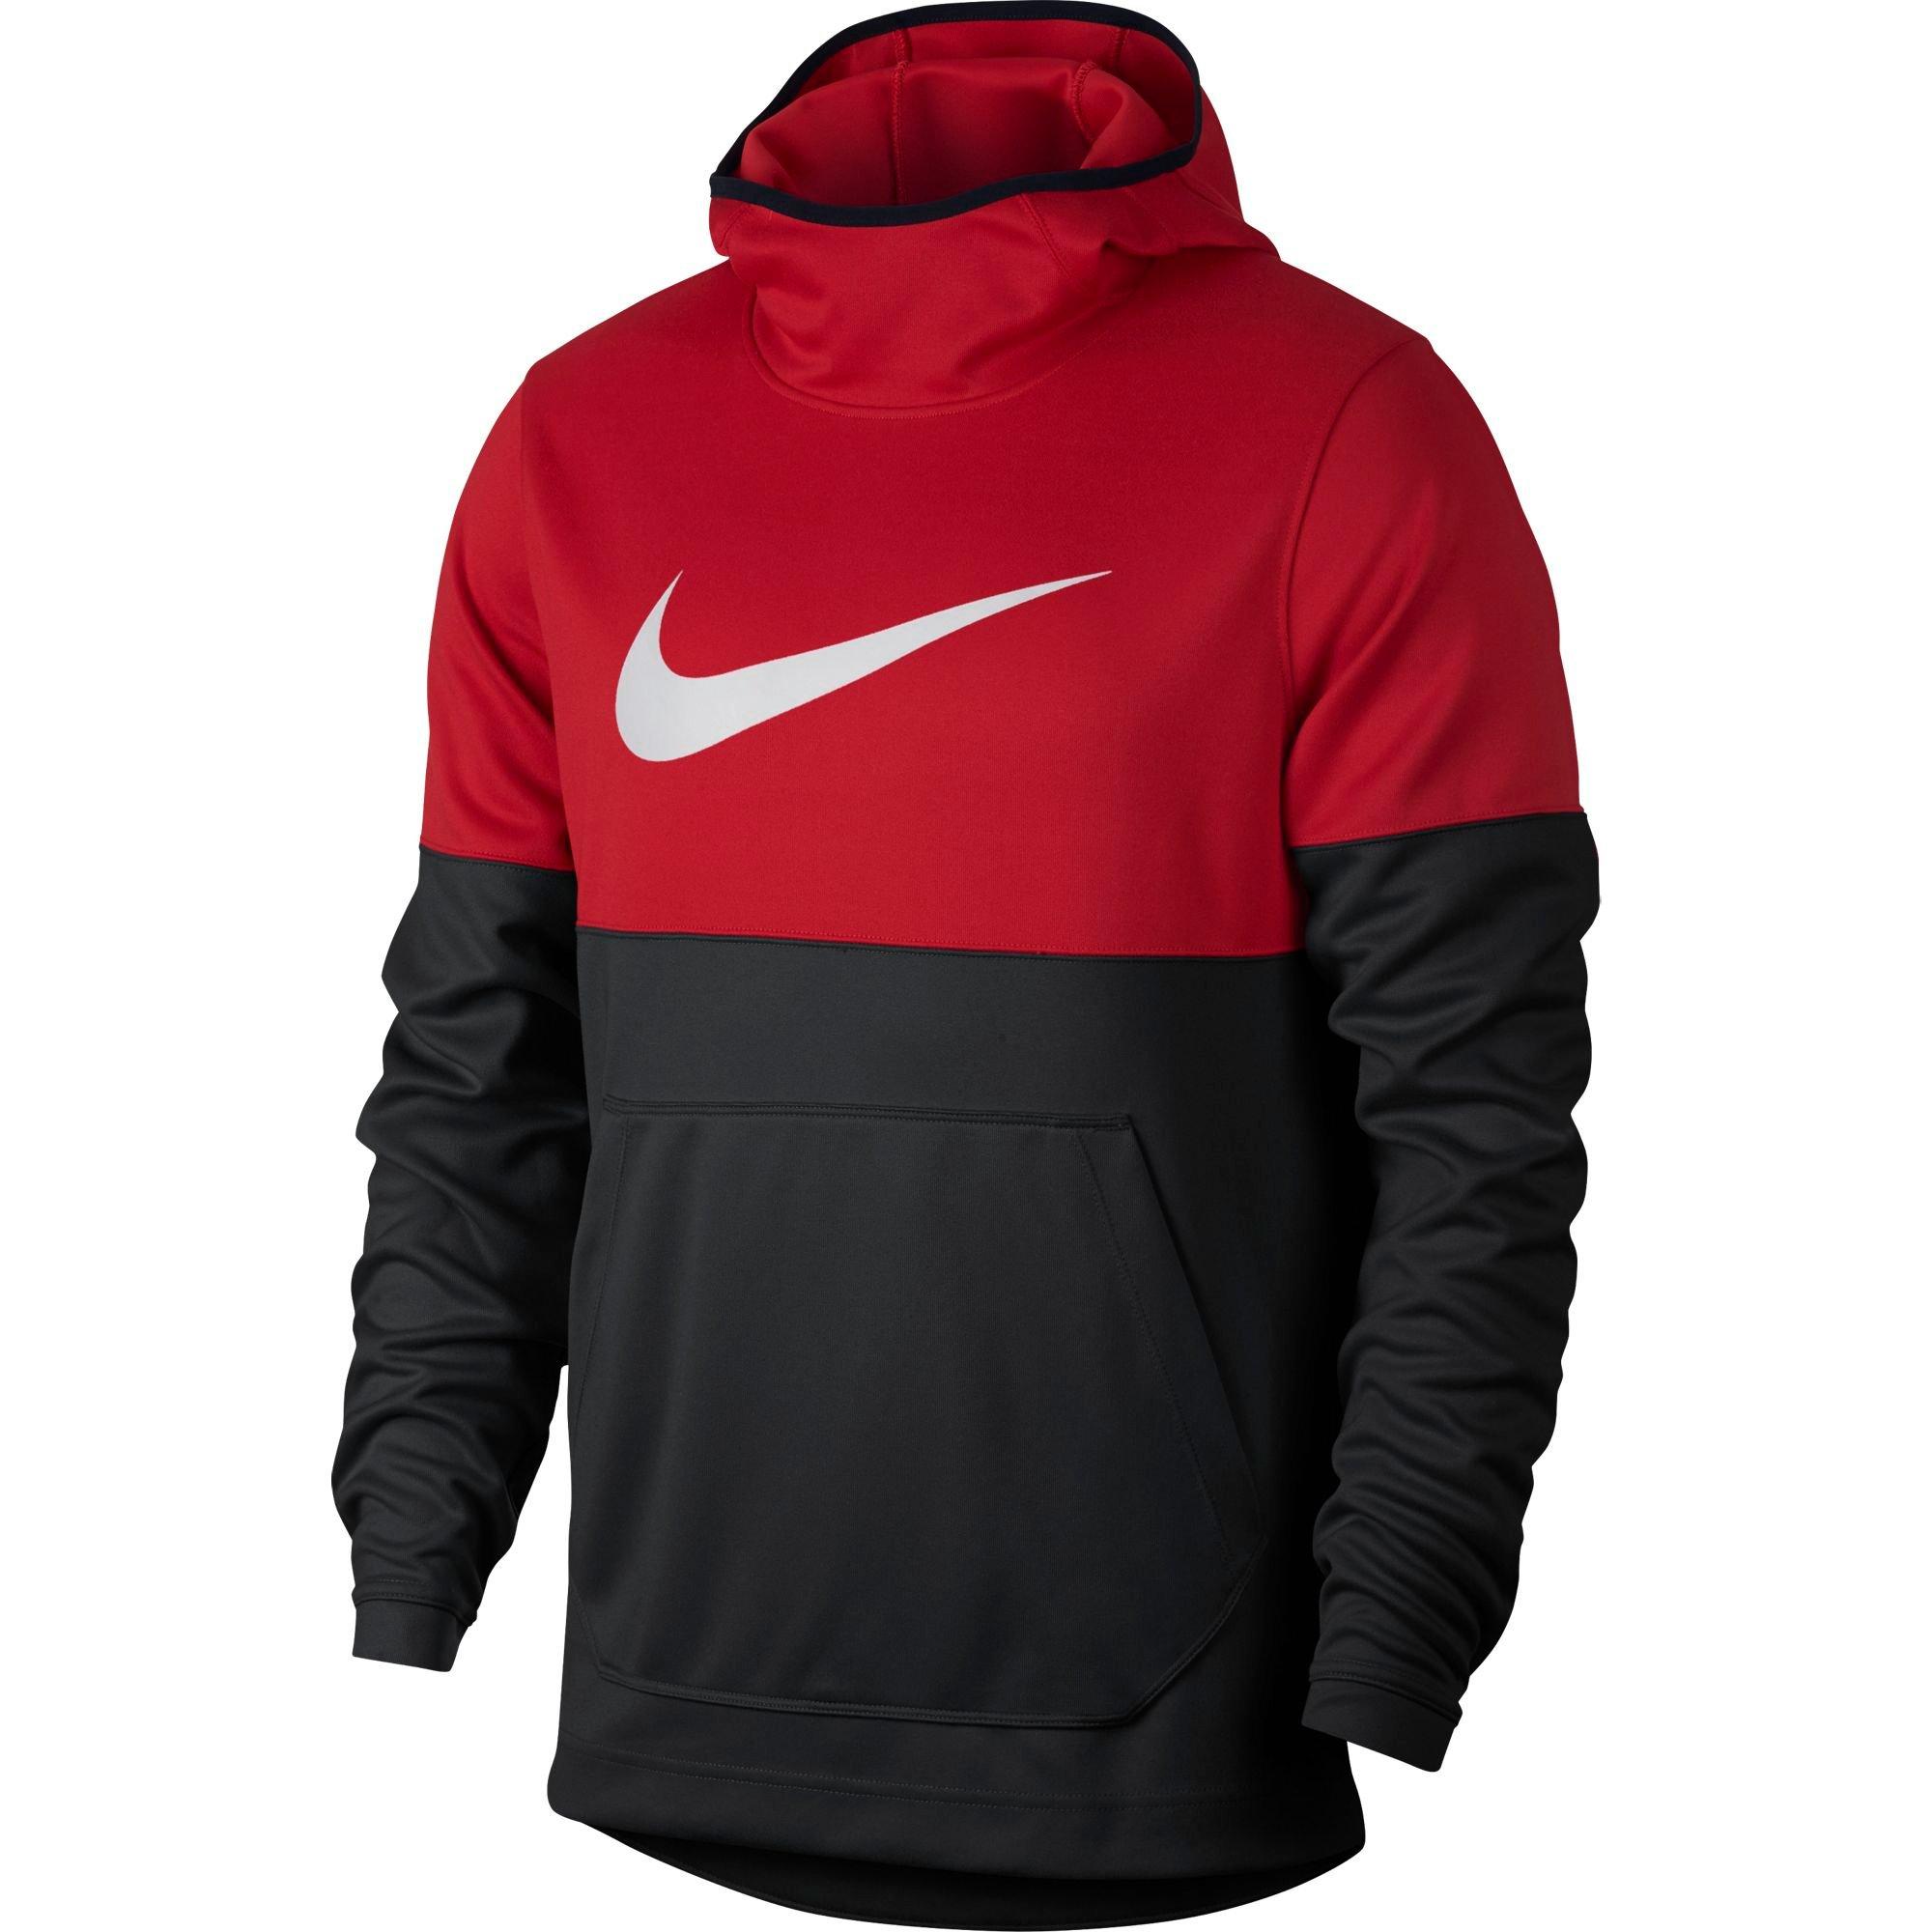 red and black nike hoodie